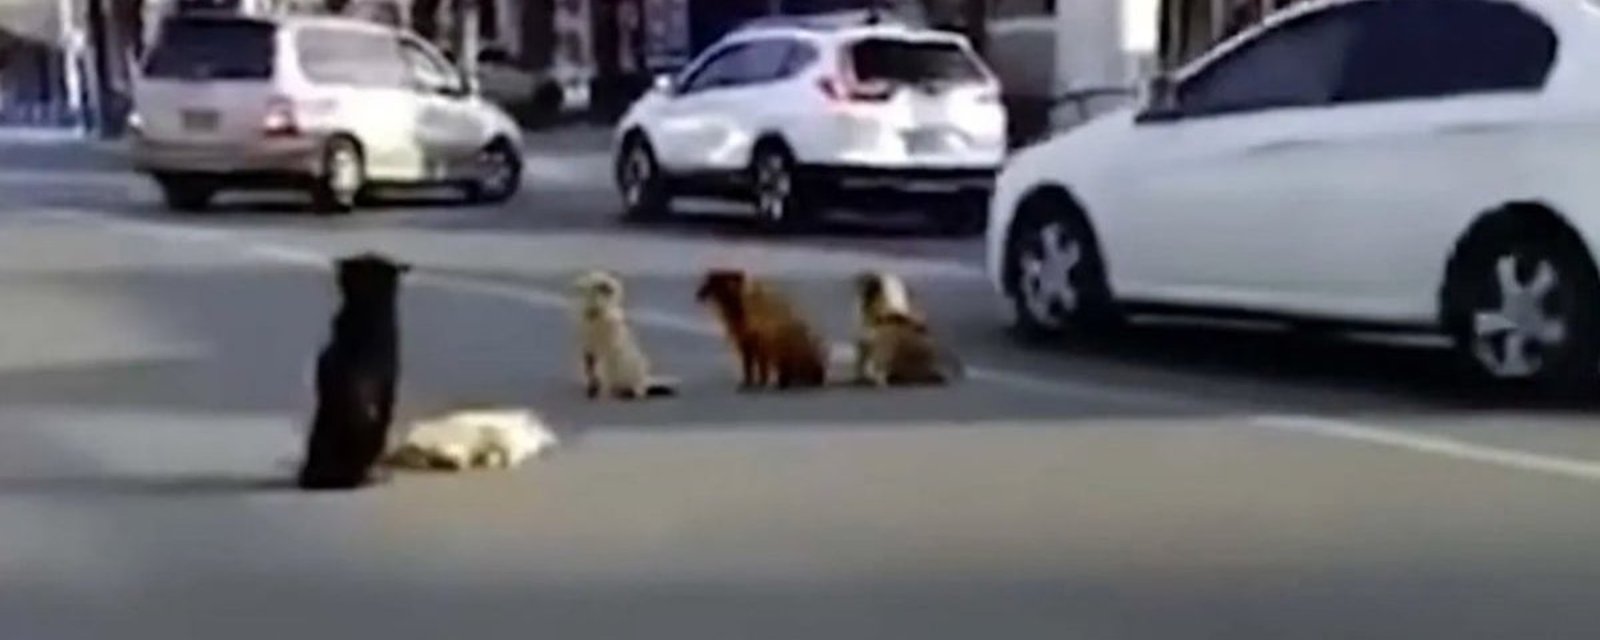 Des chiens ont bloqué la circulation pour protéger un des leurs victimes d'un accident 